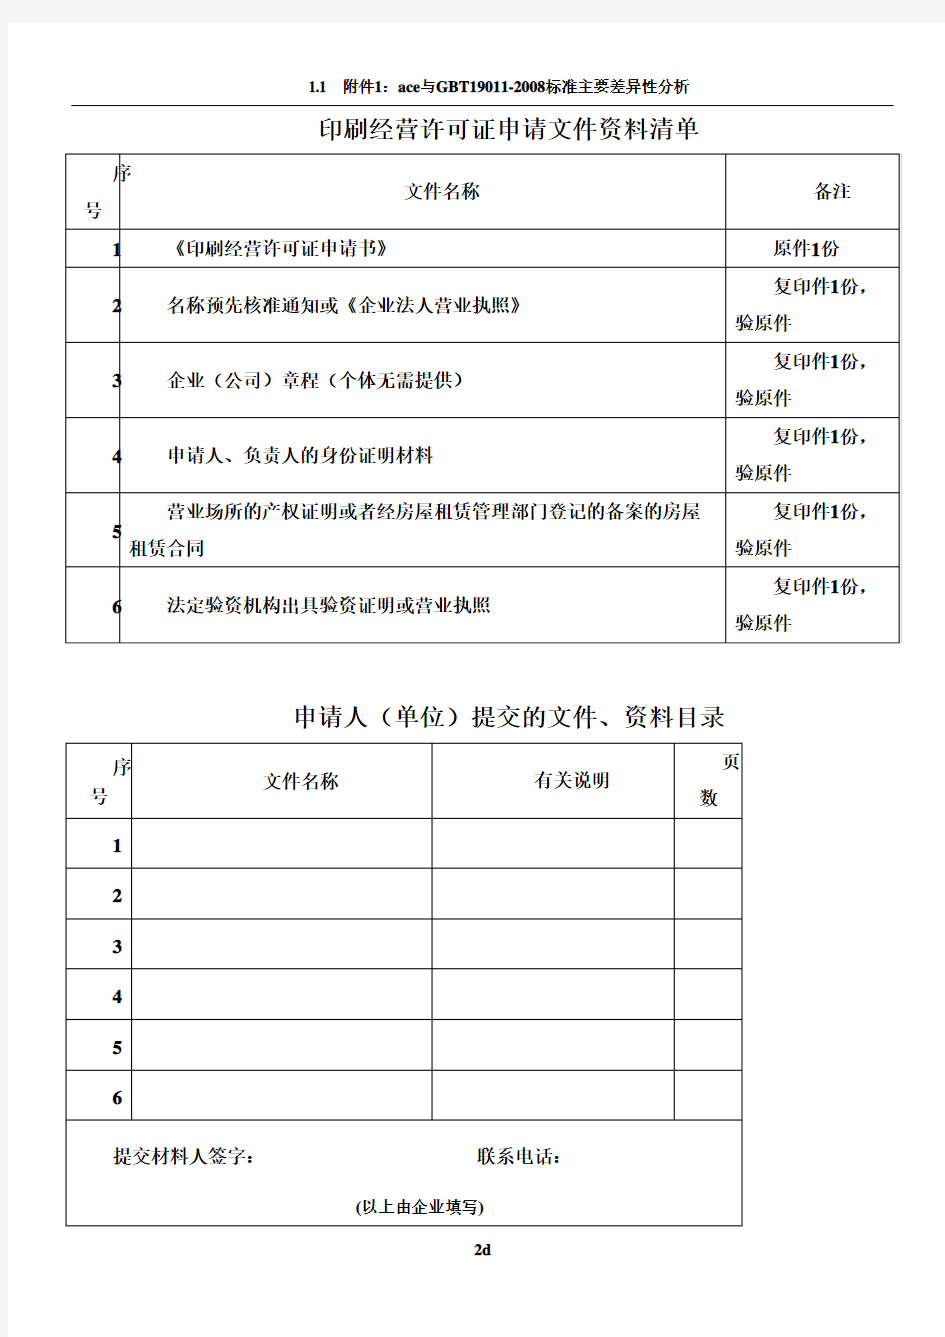 印刷经营许可证申请表